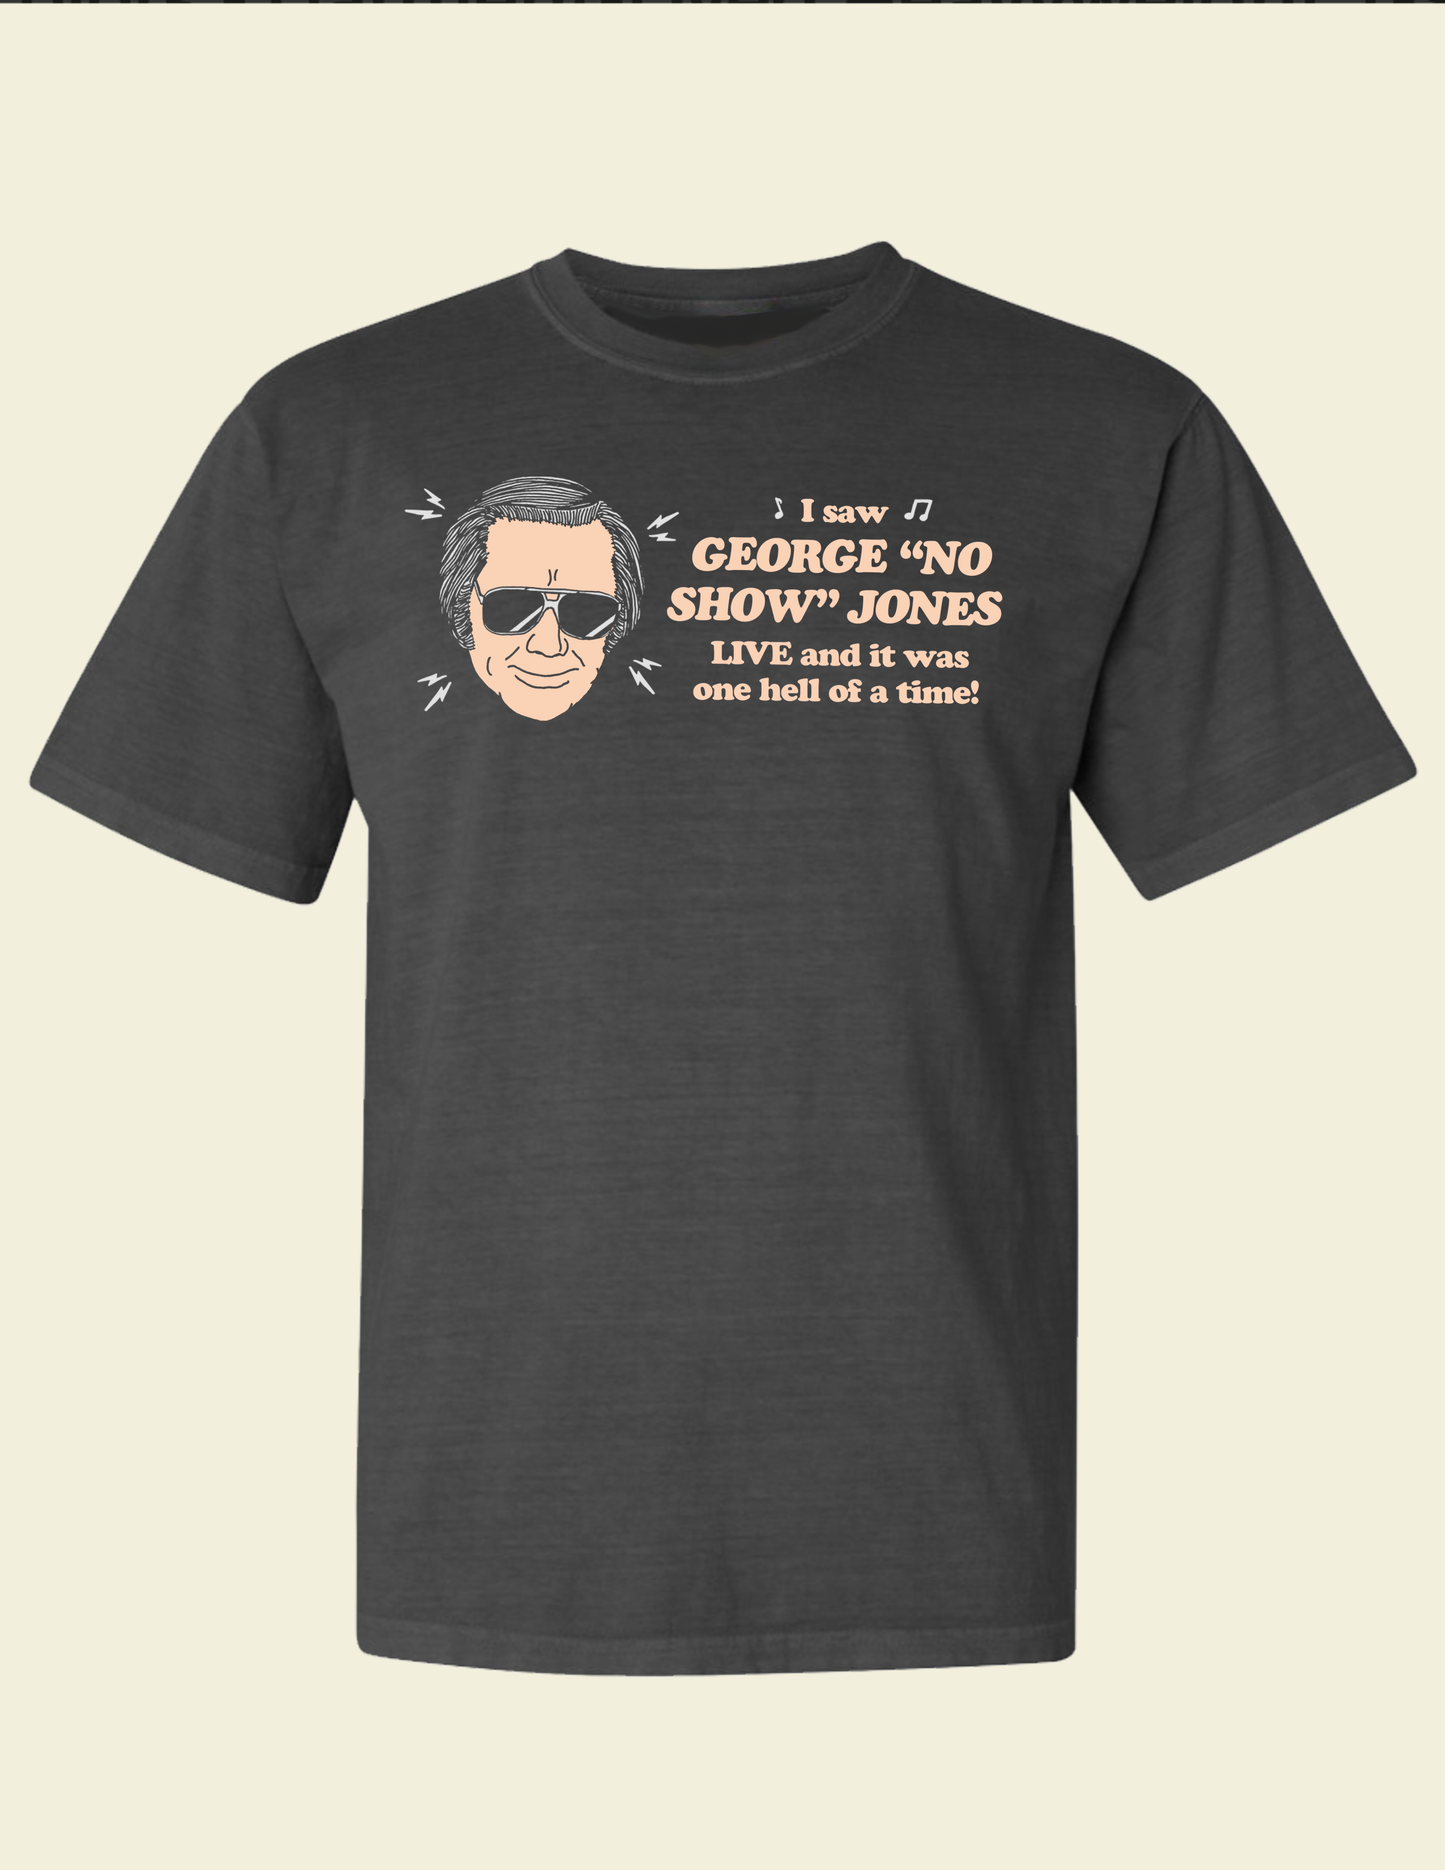 George "No Show" Jones Shirt